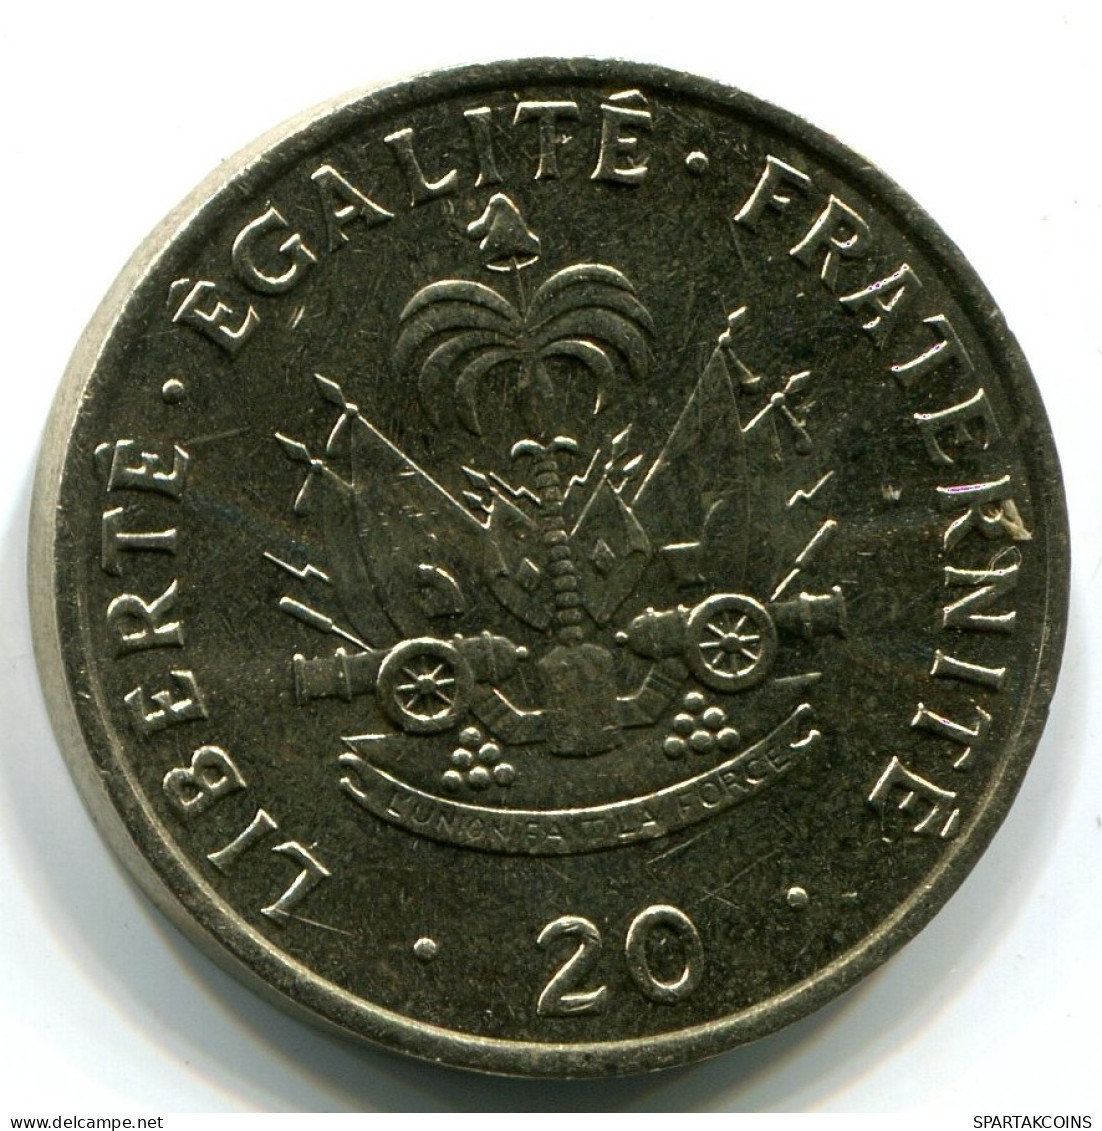 20 CENTIMES 1991 HAITI UNC Coin #W11005.U.A - Haïti